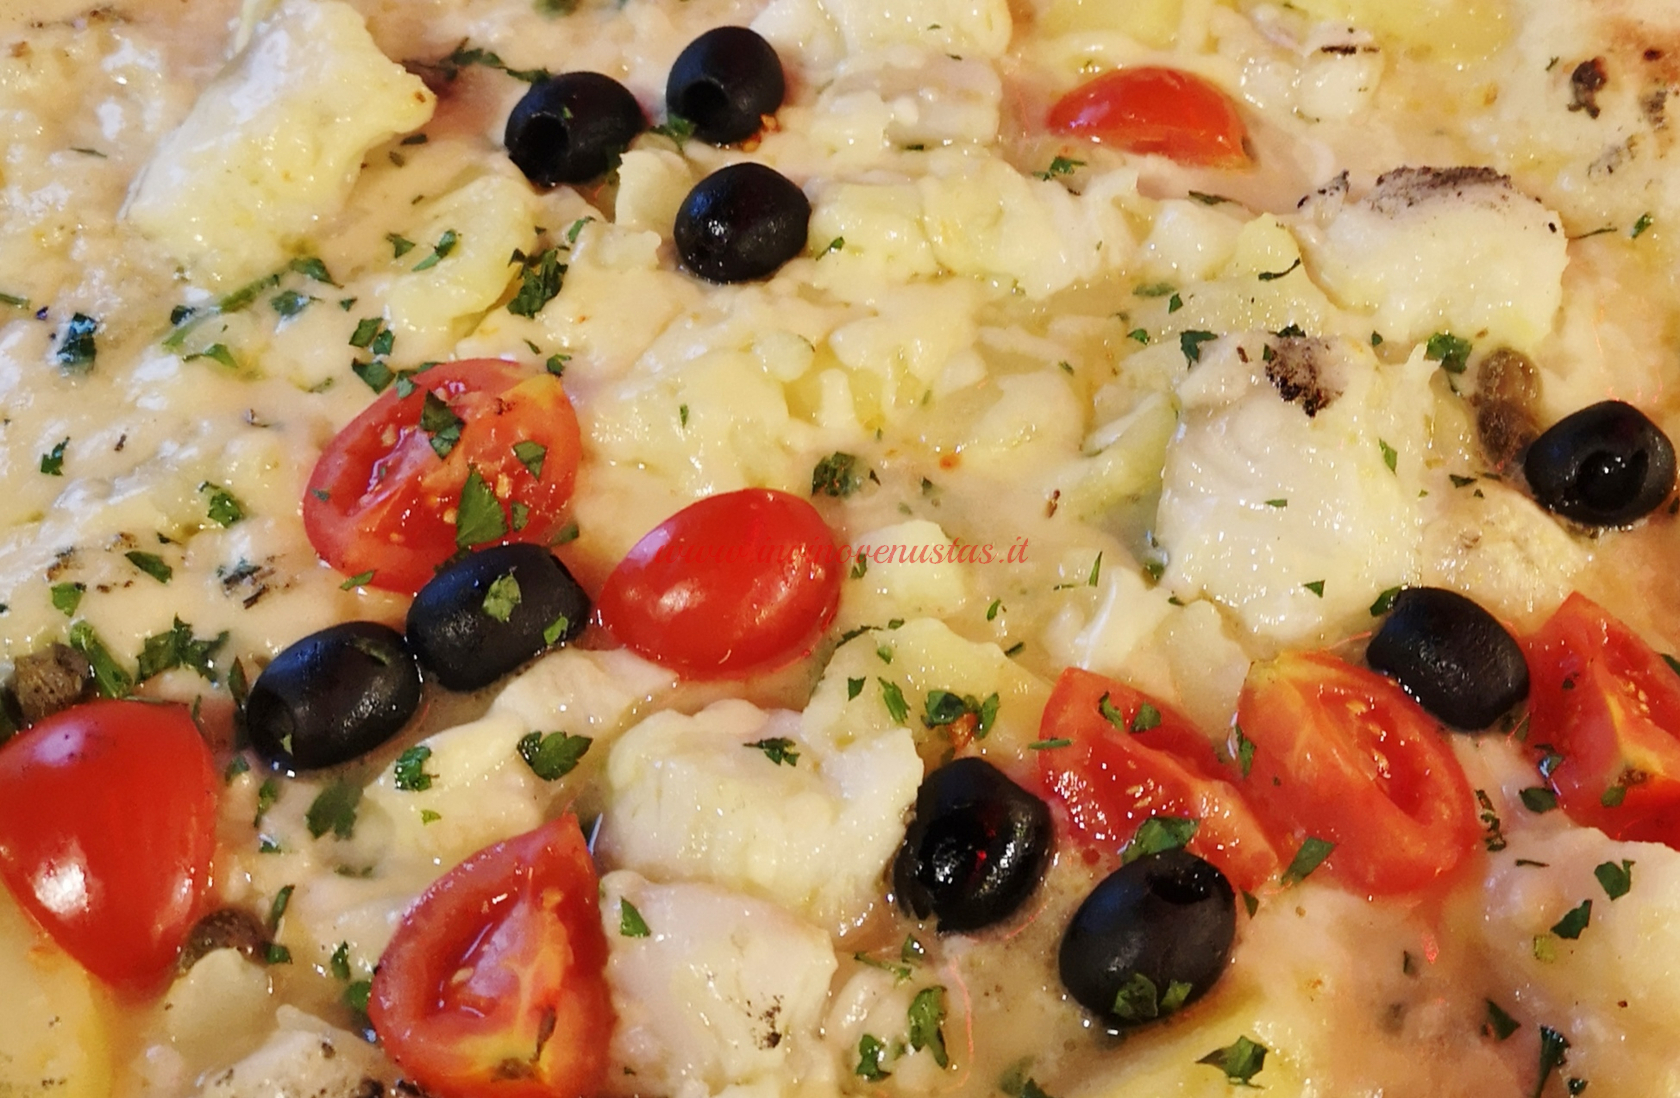 Pizza bianca con pesce olive e pomodorini come esempio di abbinamento vino e pizza